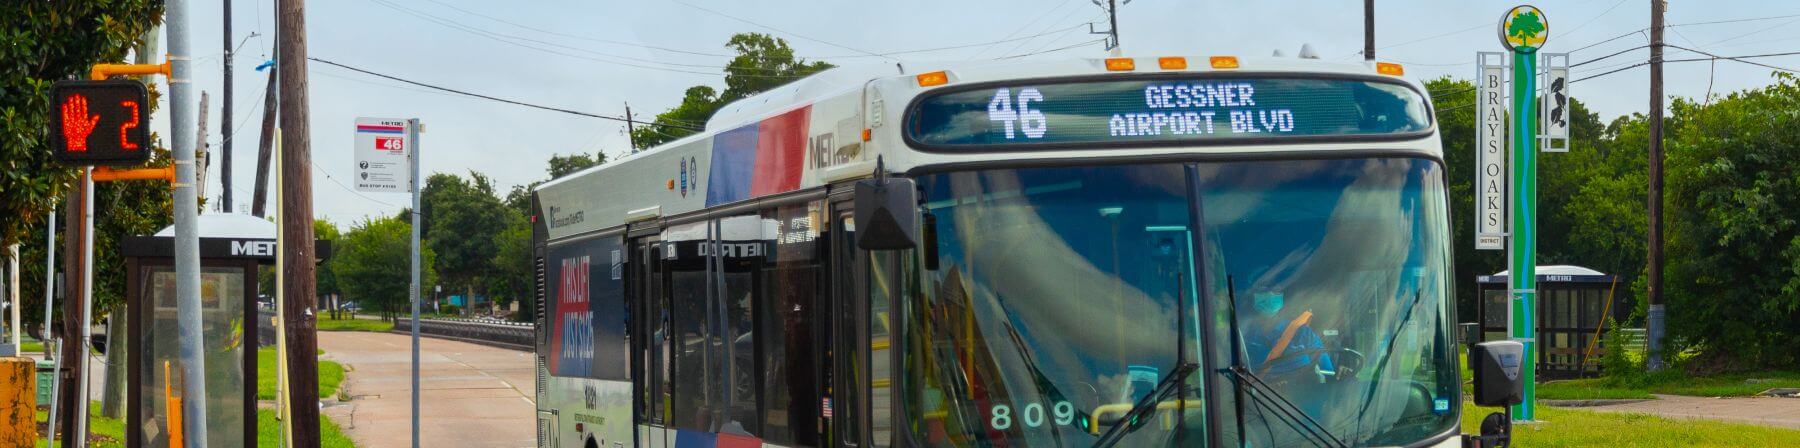 46 Gessner bus